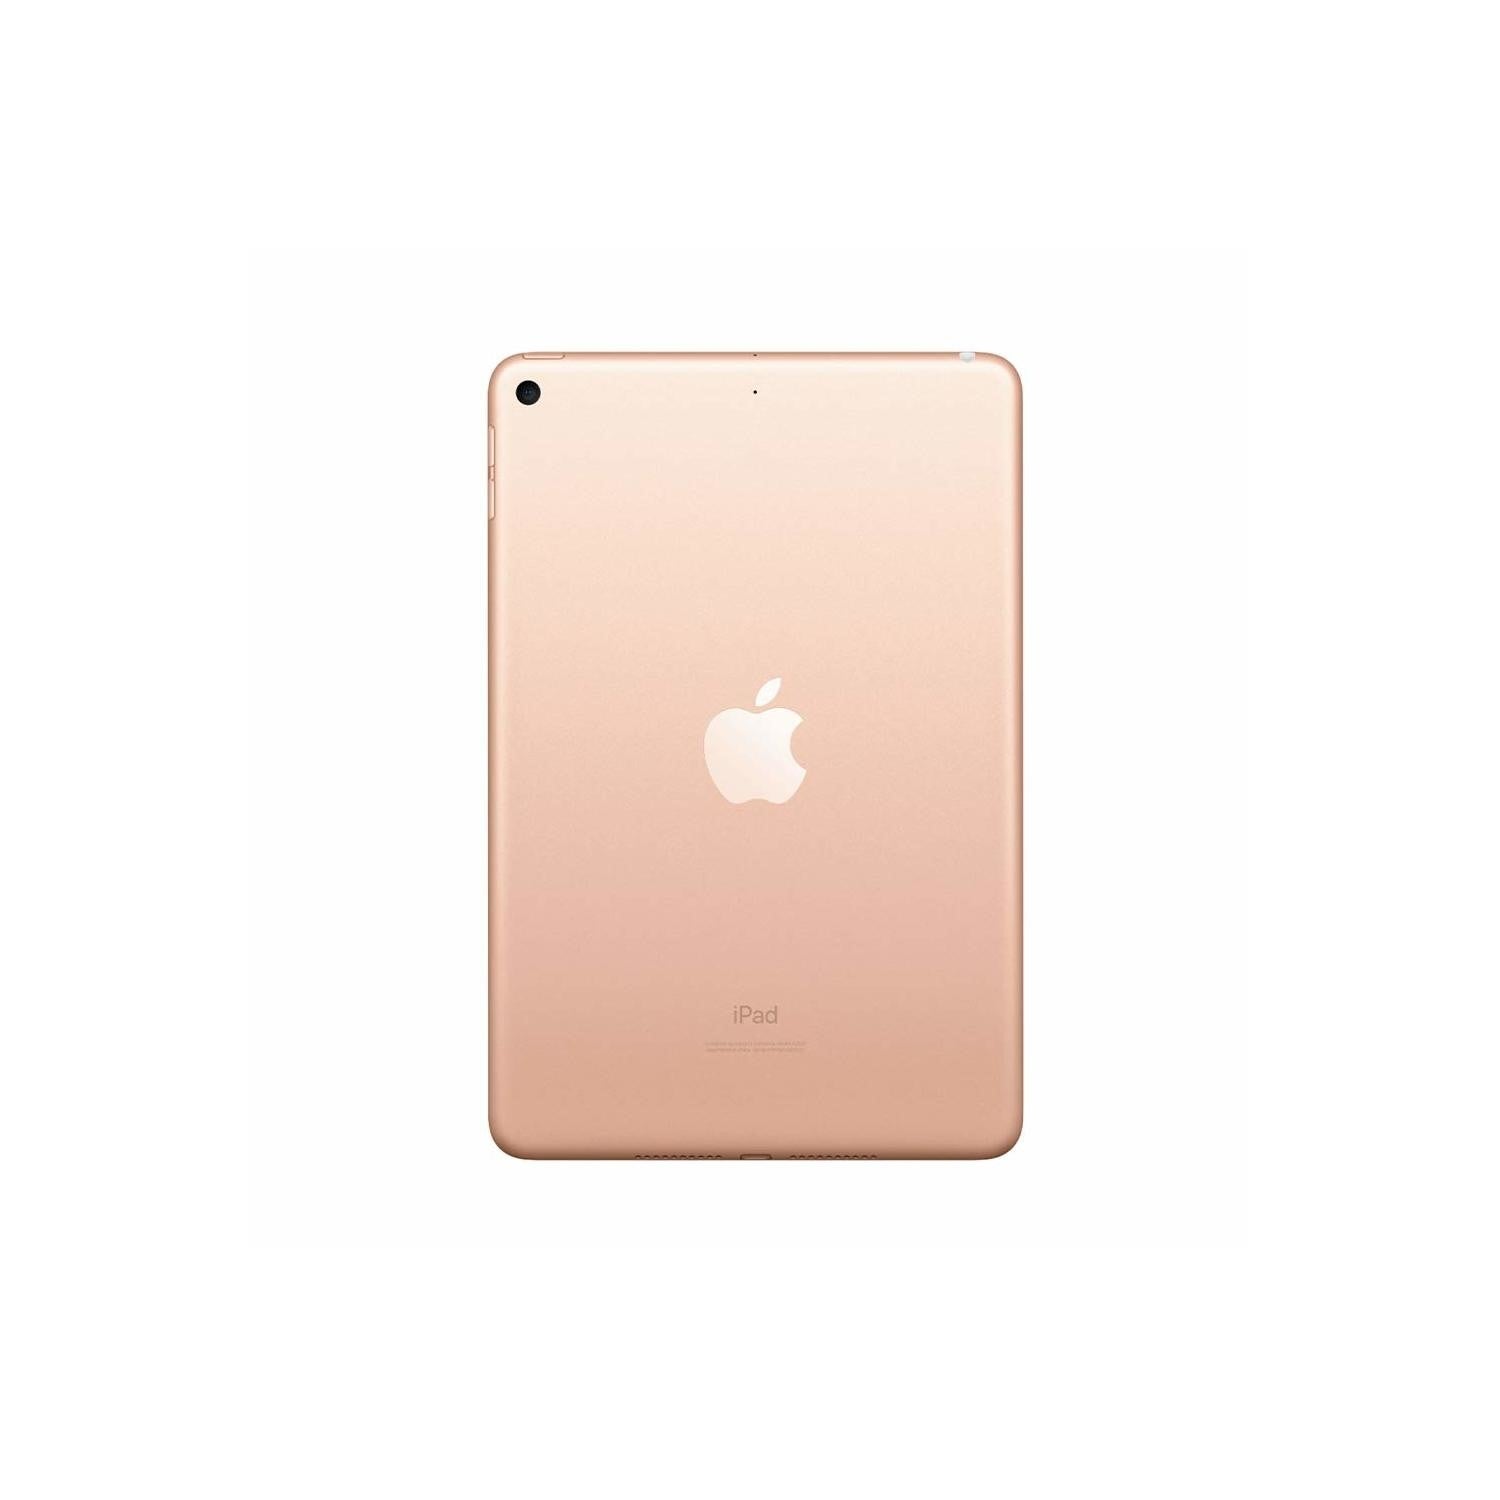 2019 Apple iPad Mini 5 Wi-Fi, 64GB, Gold (MUQY2B/A) - Excellent